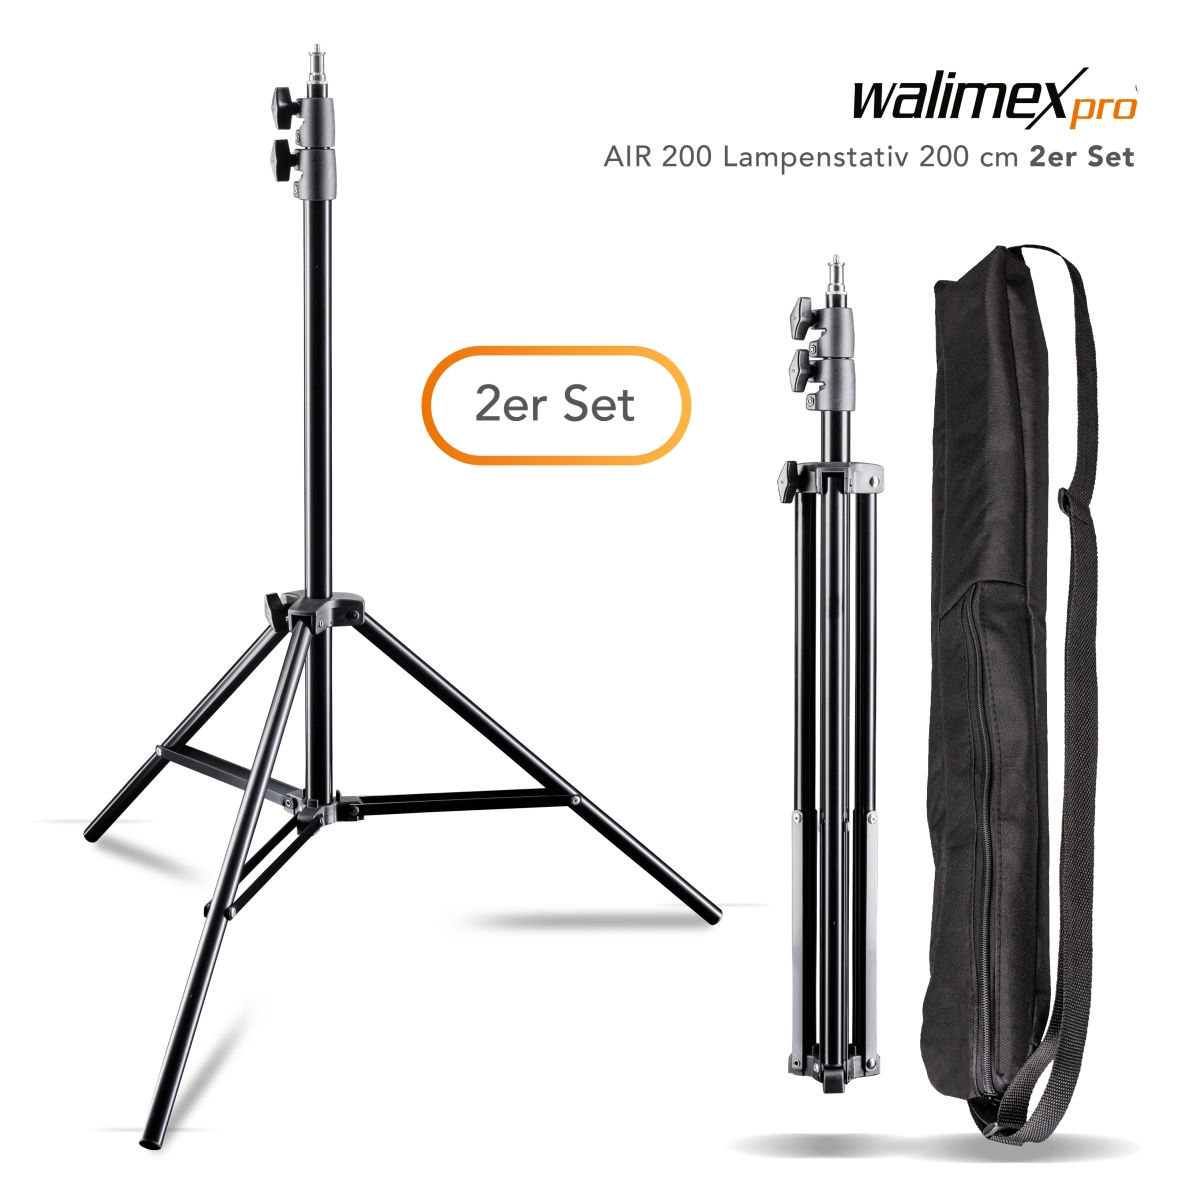 Walimex pro AIR 200 Lampenstativ 200 cm 2er Set